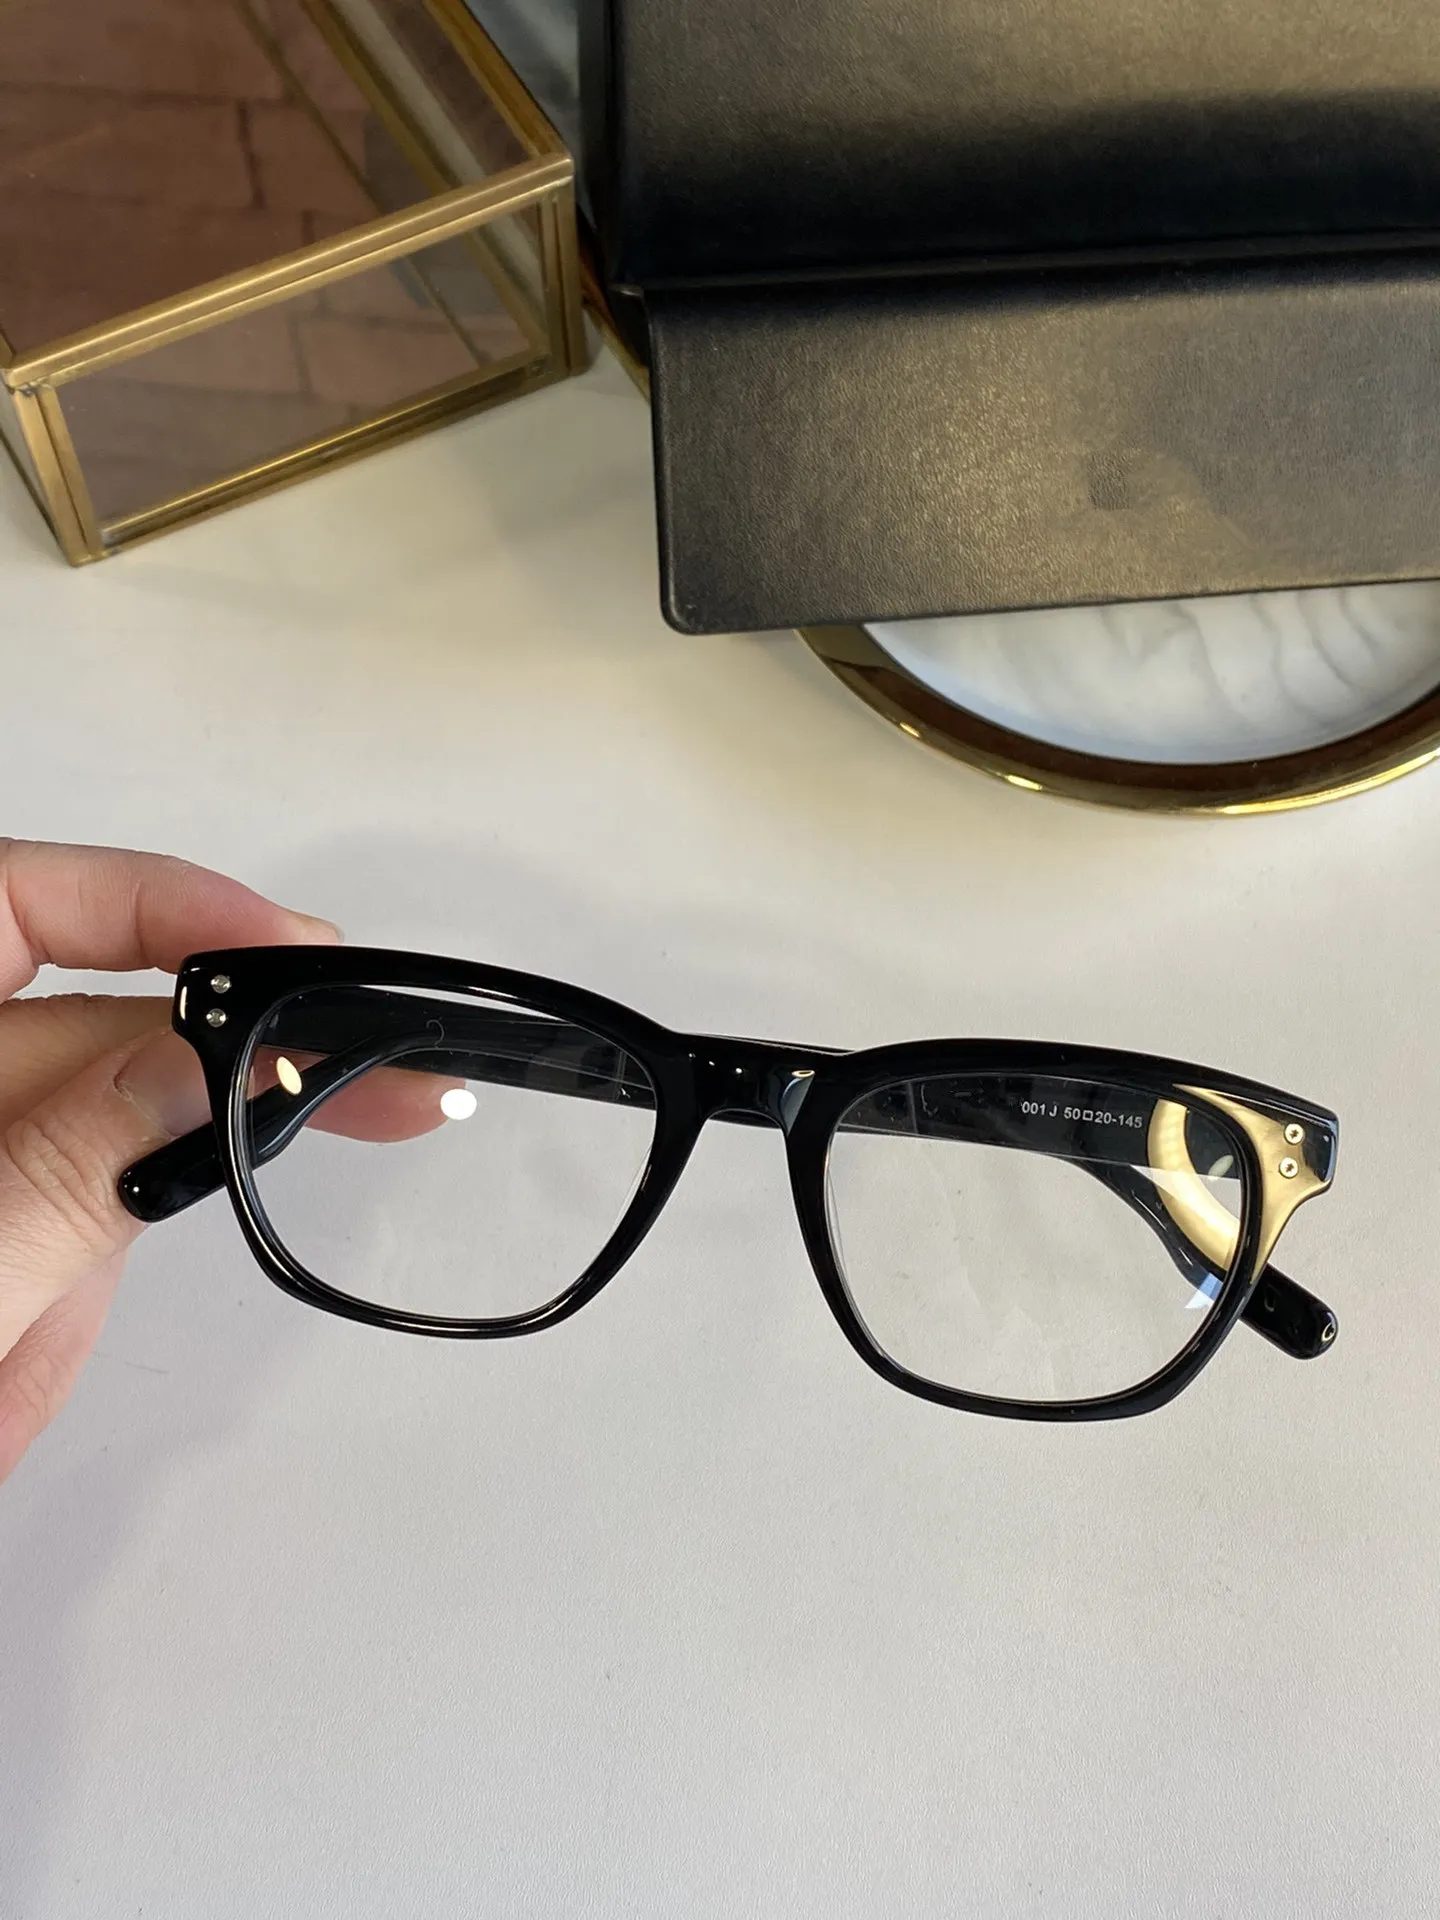 2021 جديد MB0122 مزاجه الأزياء مختلطة مع نظارات مزاج للرجال والنساء النظارات البصرية إطار الإطار 50 "20" 145